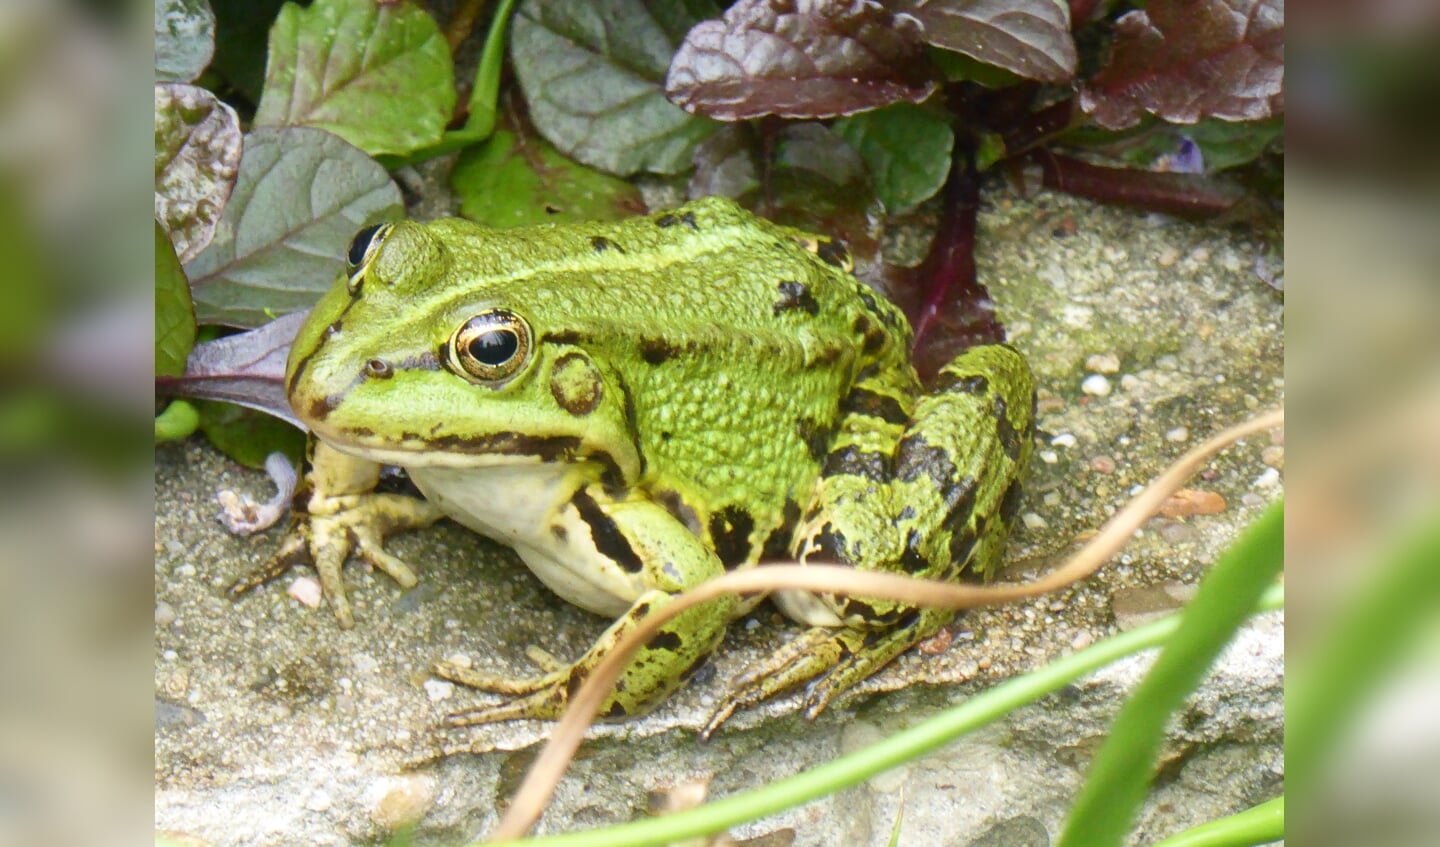 ,,Fauna in mijn eigen tuin bij de vijver. Dit is één van de zeven mooie groene kikkers waarbij je in zijn oog mijn reflectie ziet.